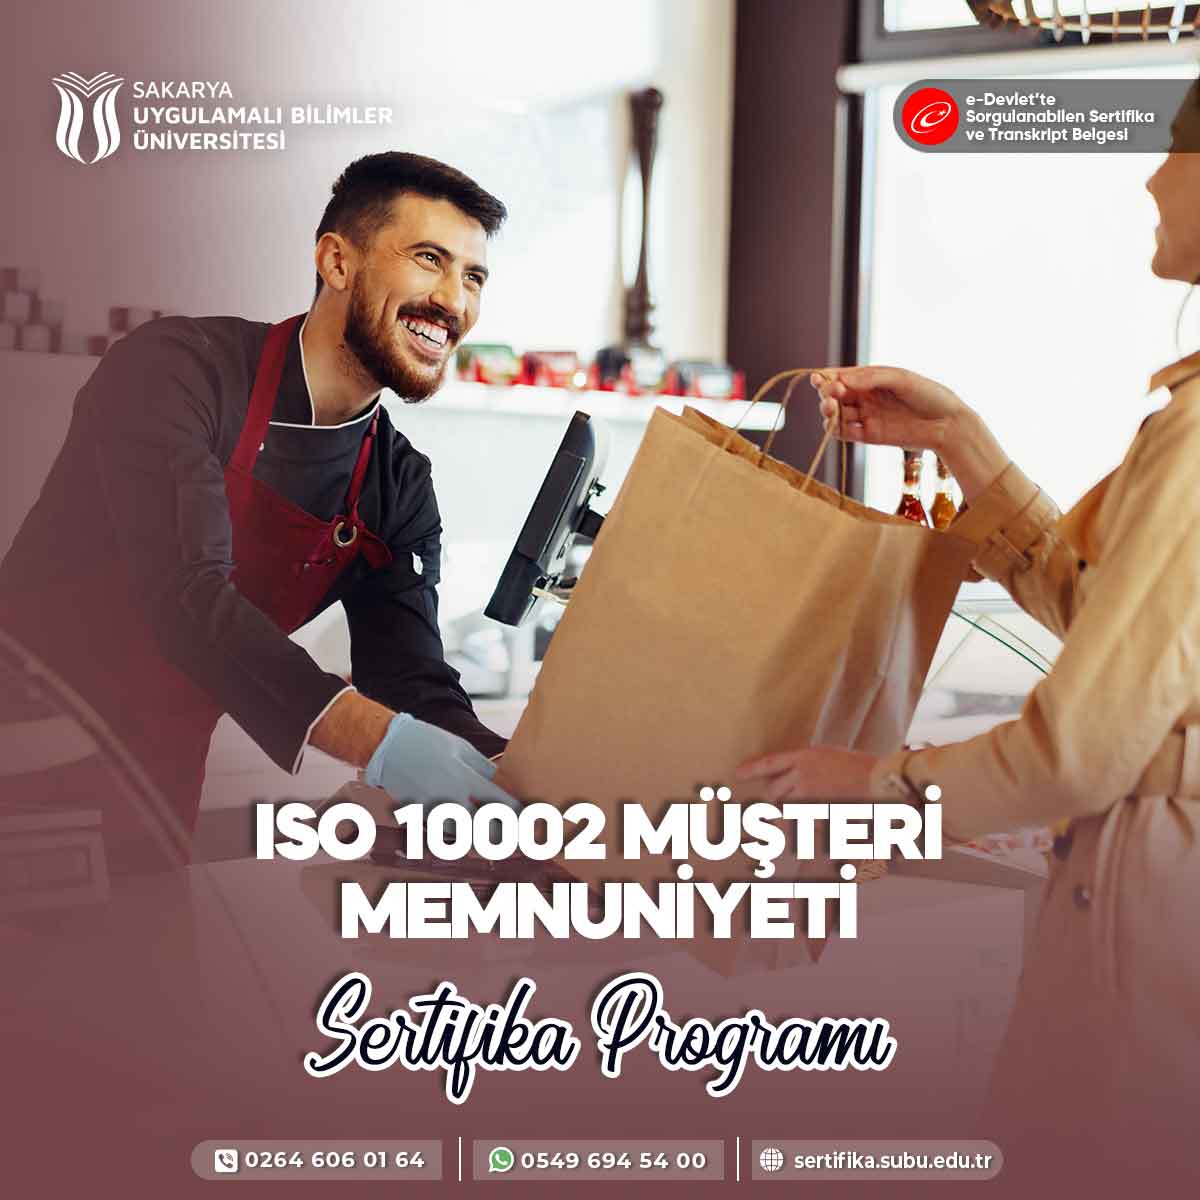 ISO 10002 Müşteri Memnuniyeti Sertifika Programı